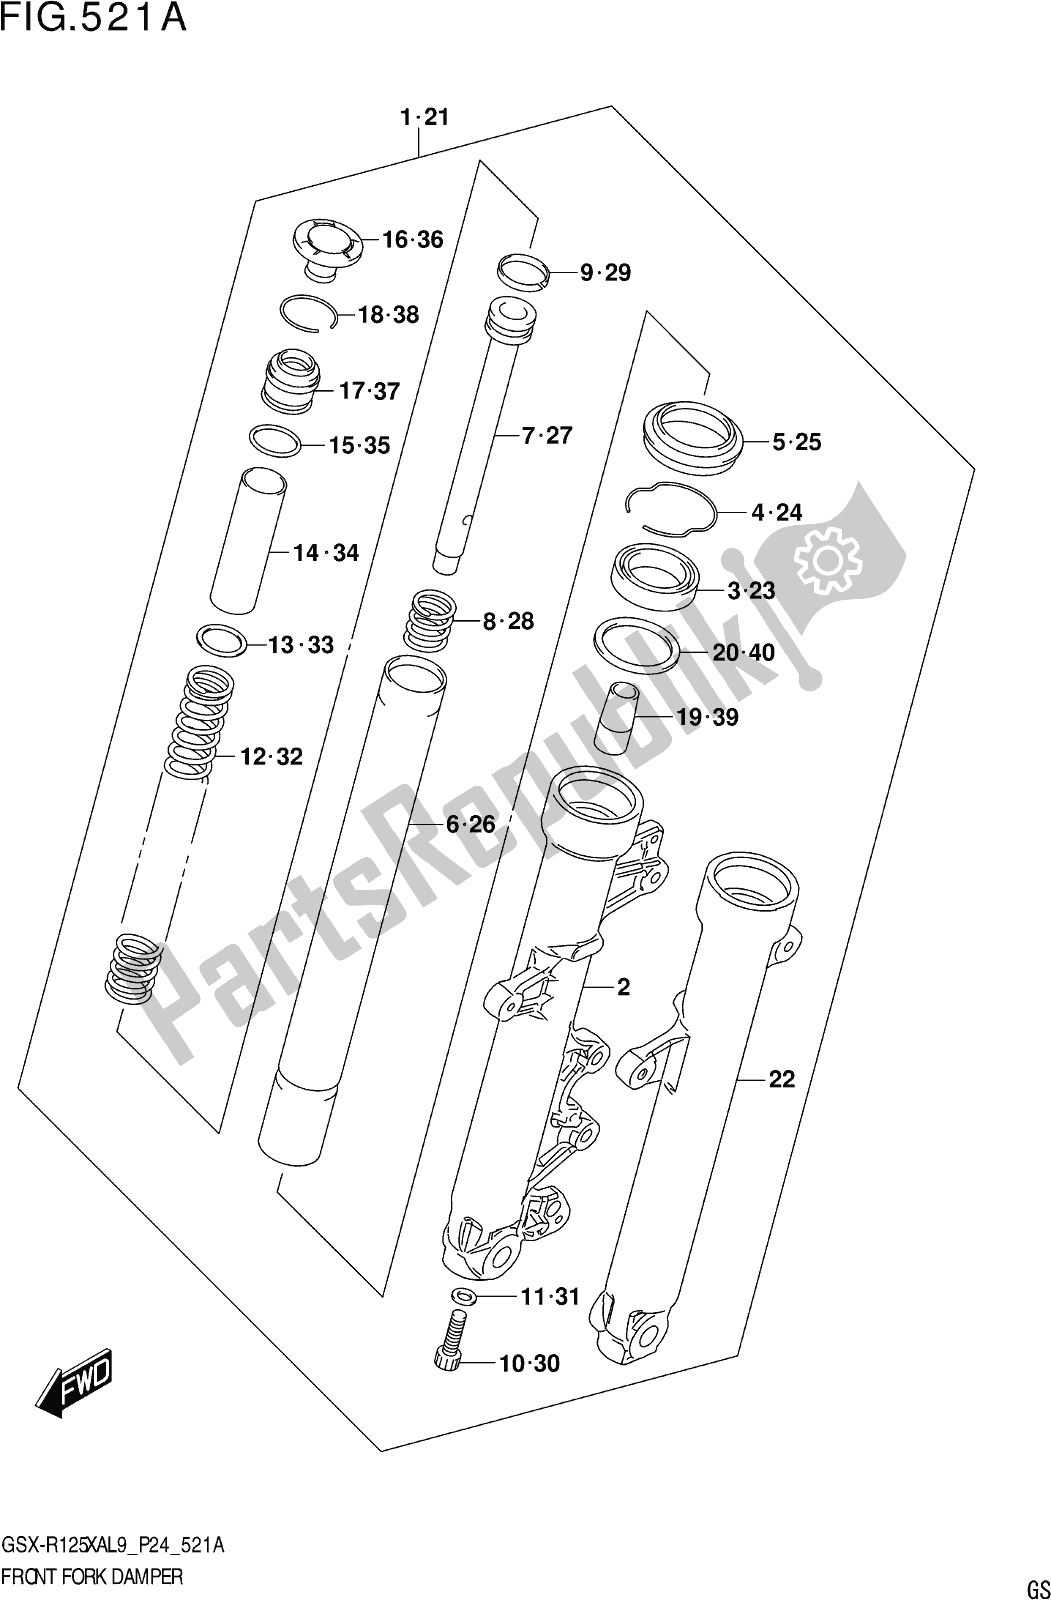 Tutte le parti per il Fig. 521a Front Fork Damper del Suzuki Gsx-r 125 XA 2019